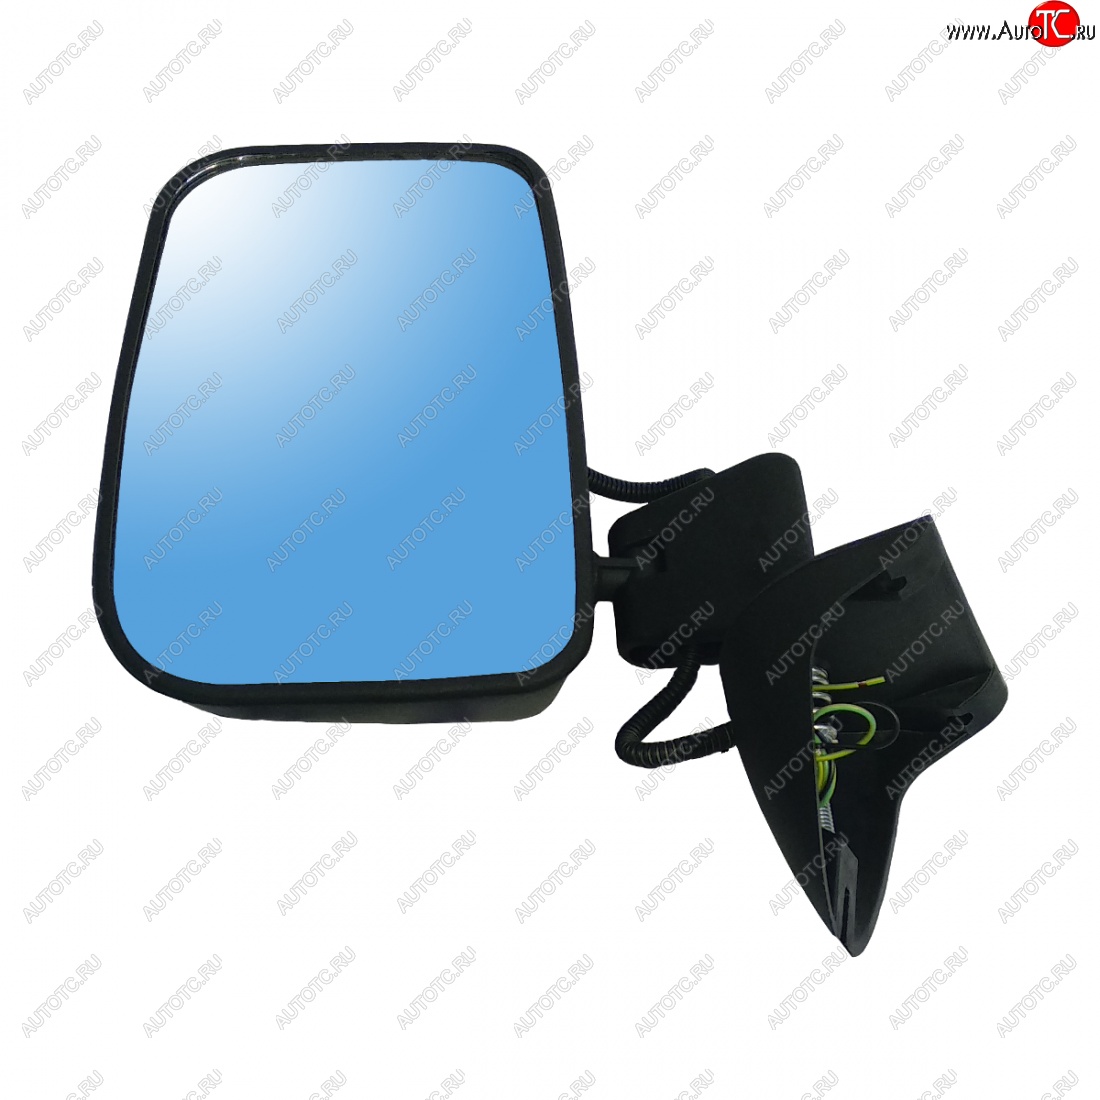 569 р. Левое зеркало заднего вида (Тайга/обогрев) Автоблик 2 ВИС 2346 бортовой грузовик рестайлинг (2021-2024) (без антибликового покрытия)